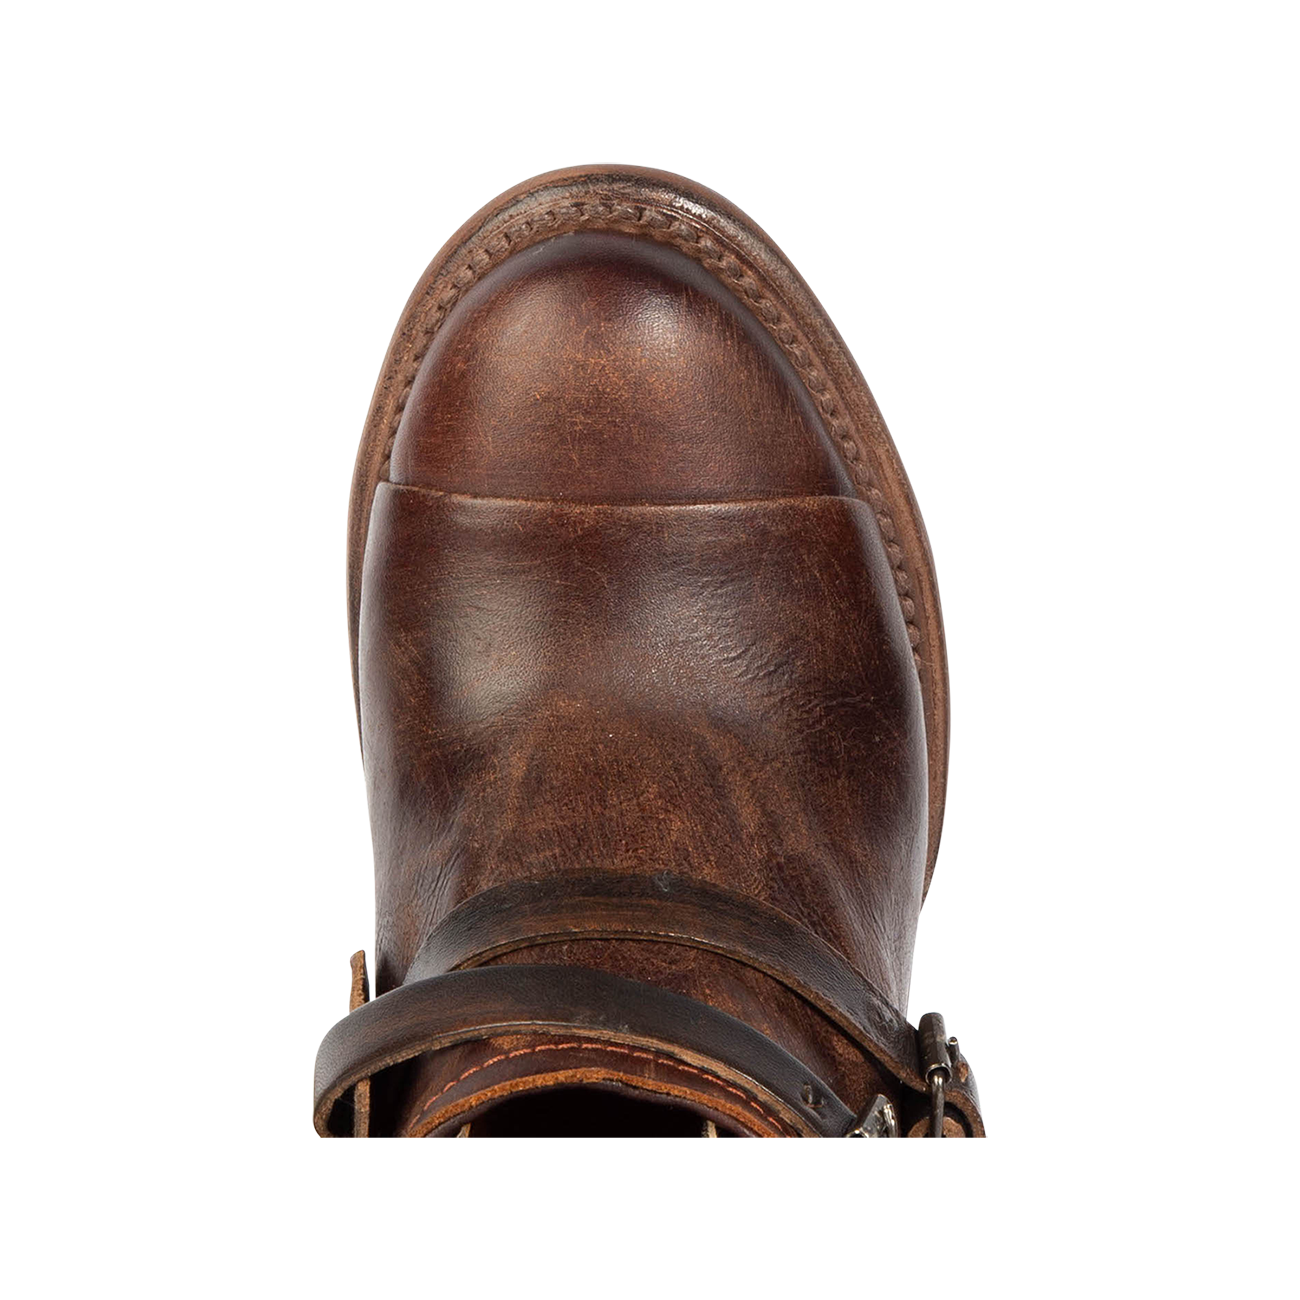 Top view showing almond toe on FREEBIRD women's Crue copper multi leather bootie